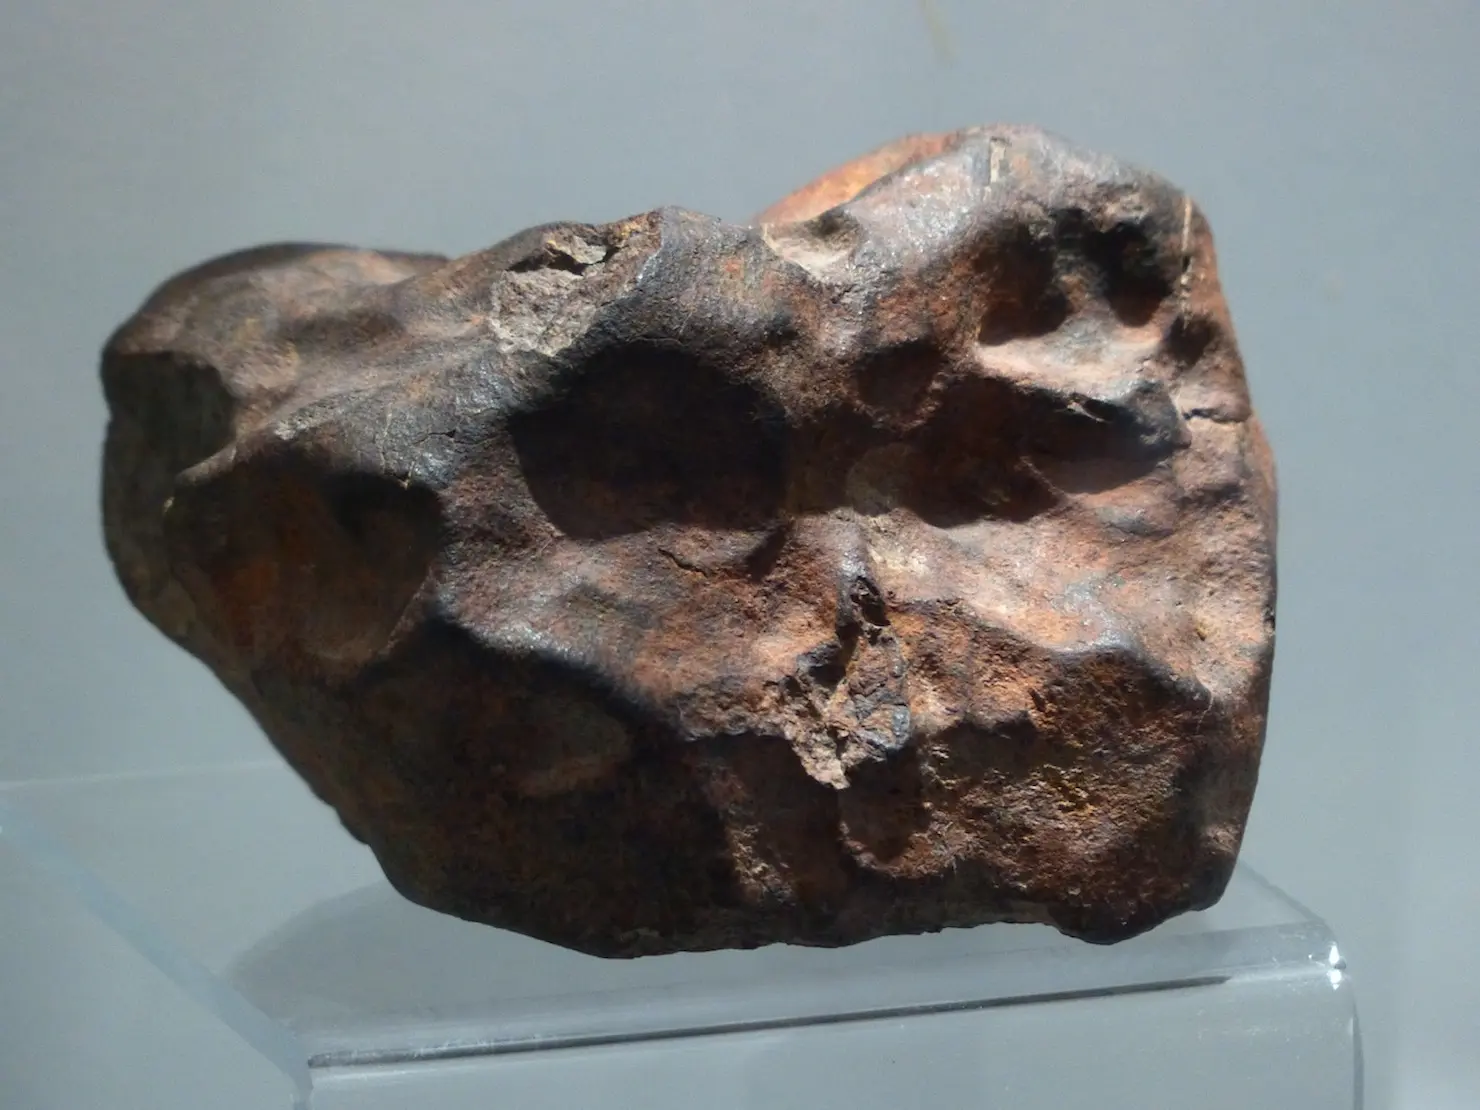 meteorite on display in museum